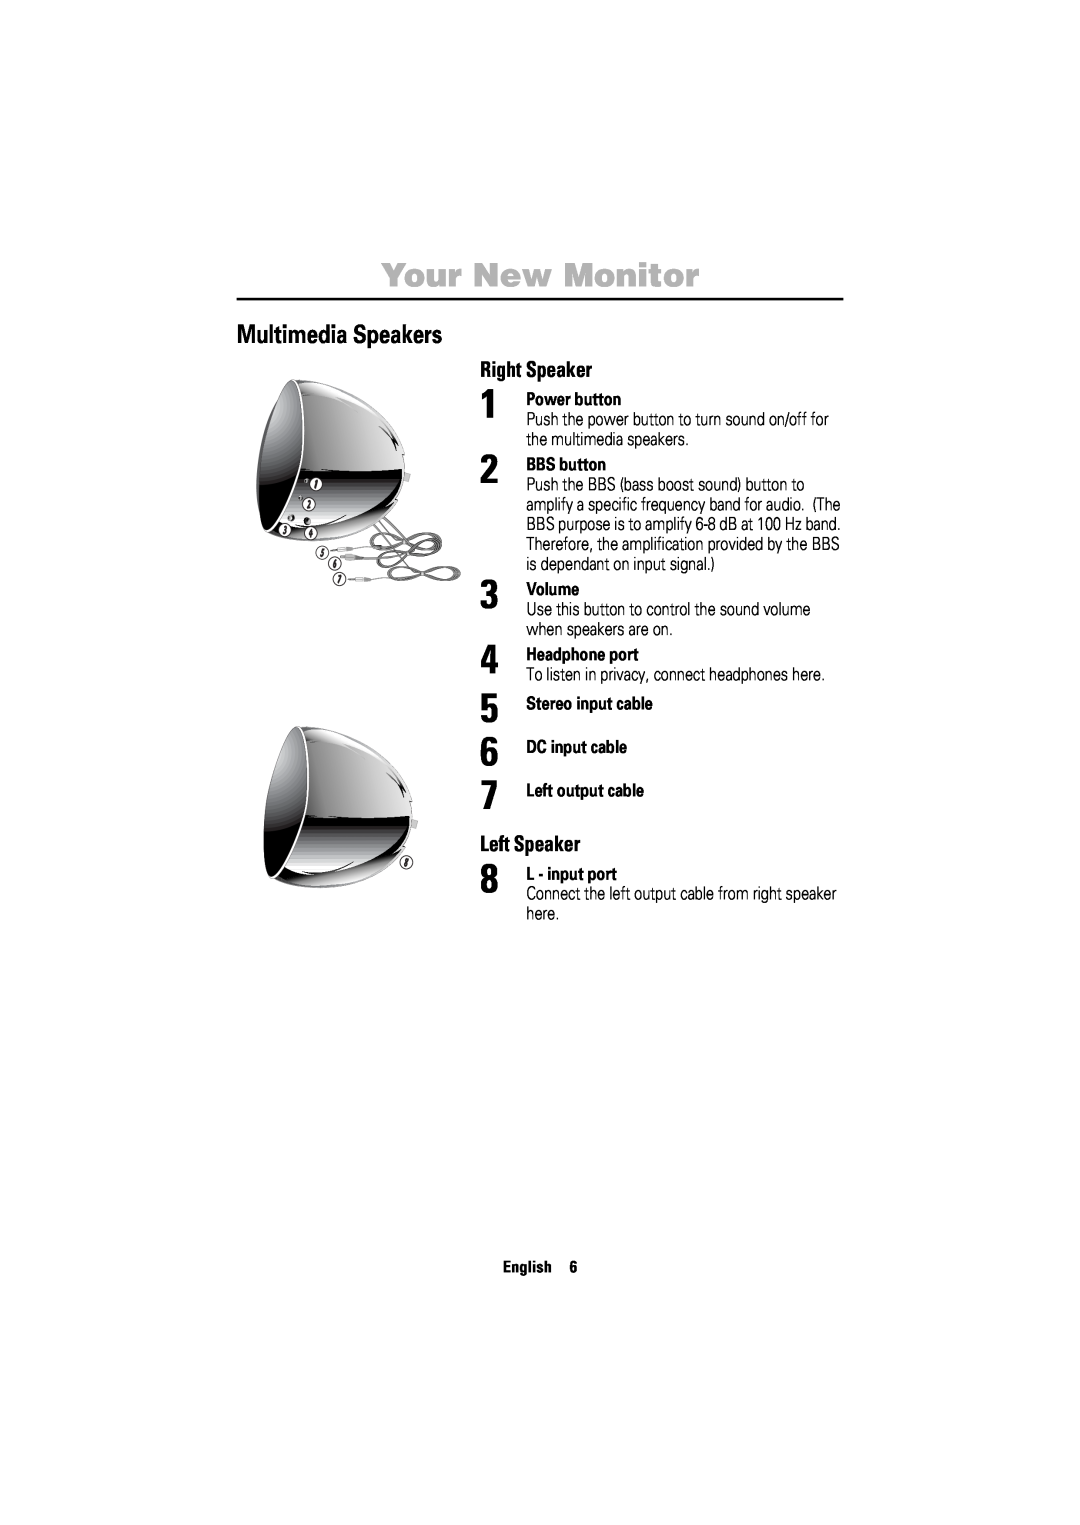 Samsung 750ST Multimedia Speakers, Right Speaker, Left Speaker, Power button, BBS button, Volume, Headphone port, English 